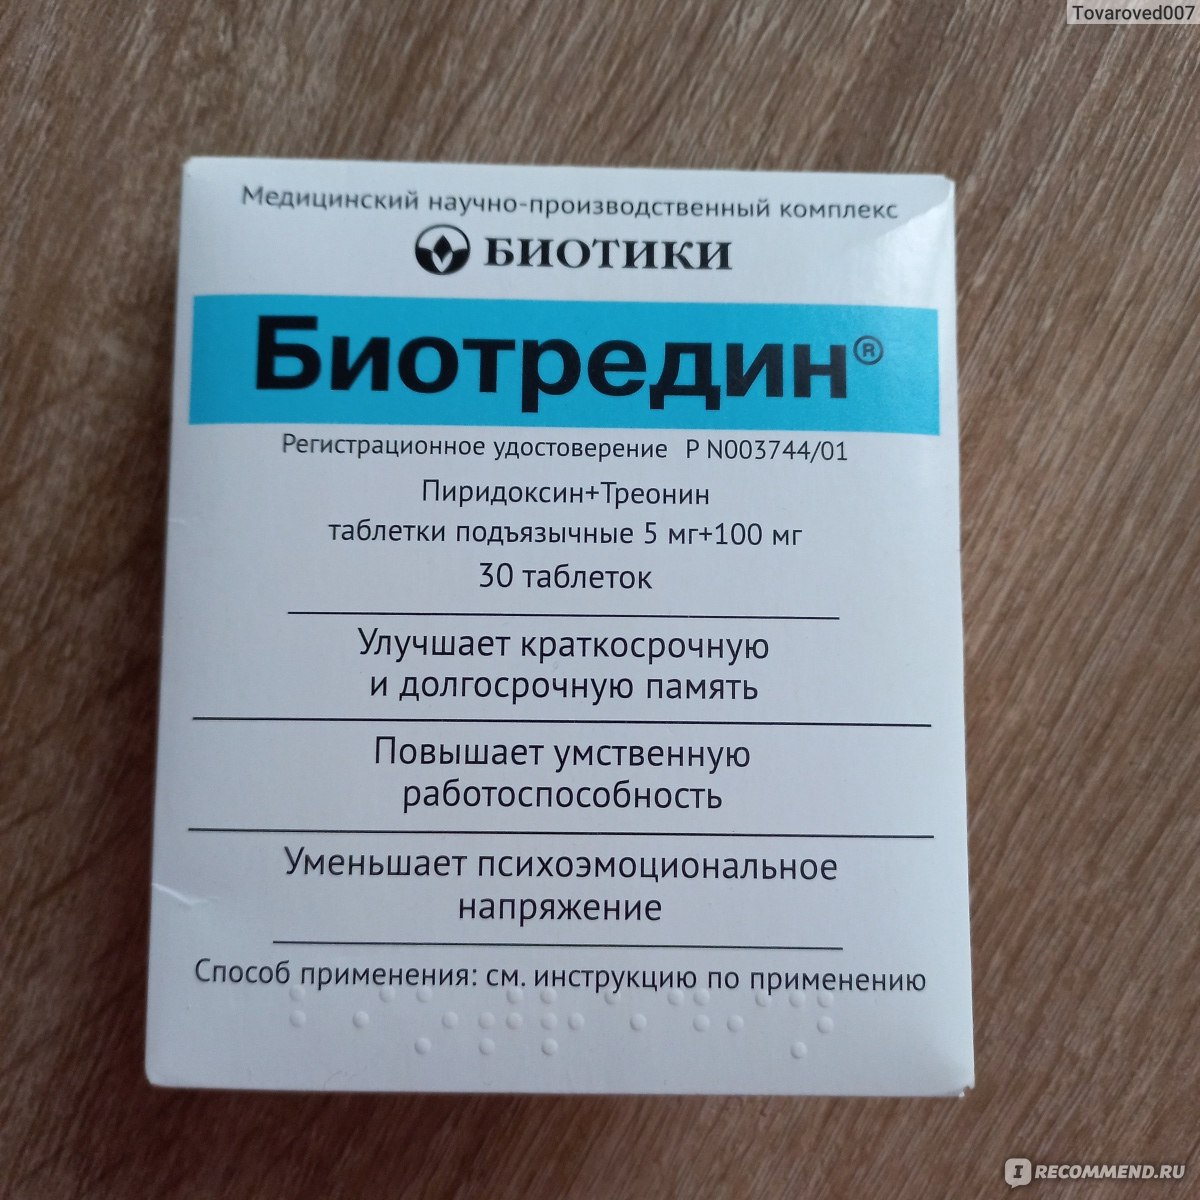 Таблетки подъязычные Биотредин - «Опыт применения биотредина совместно .